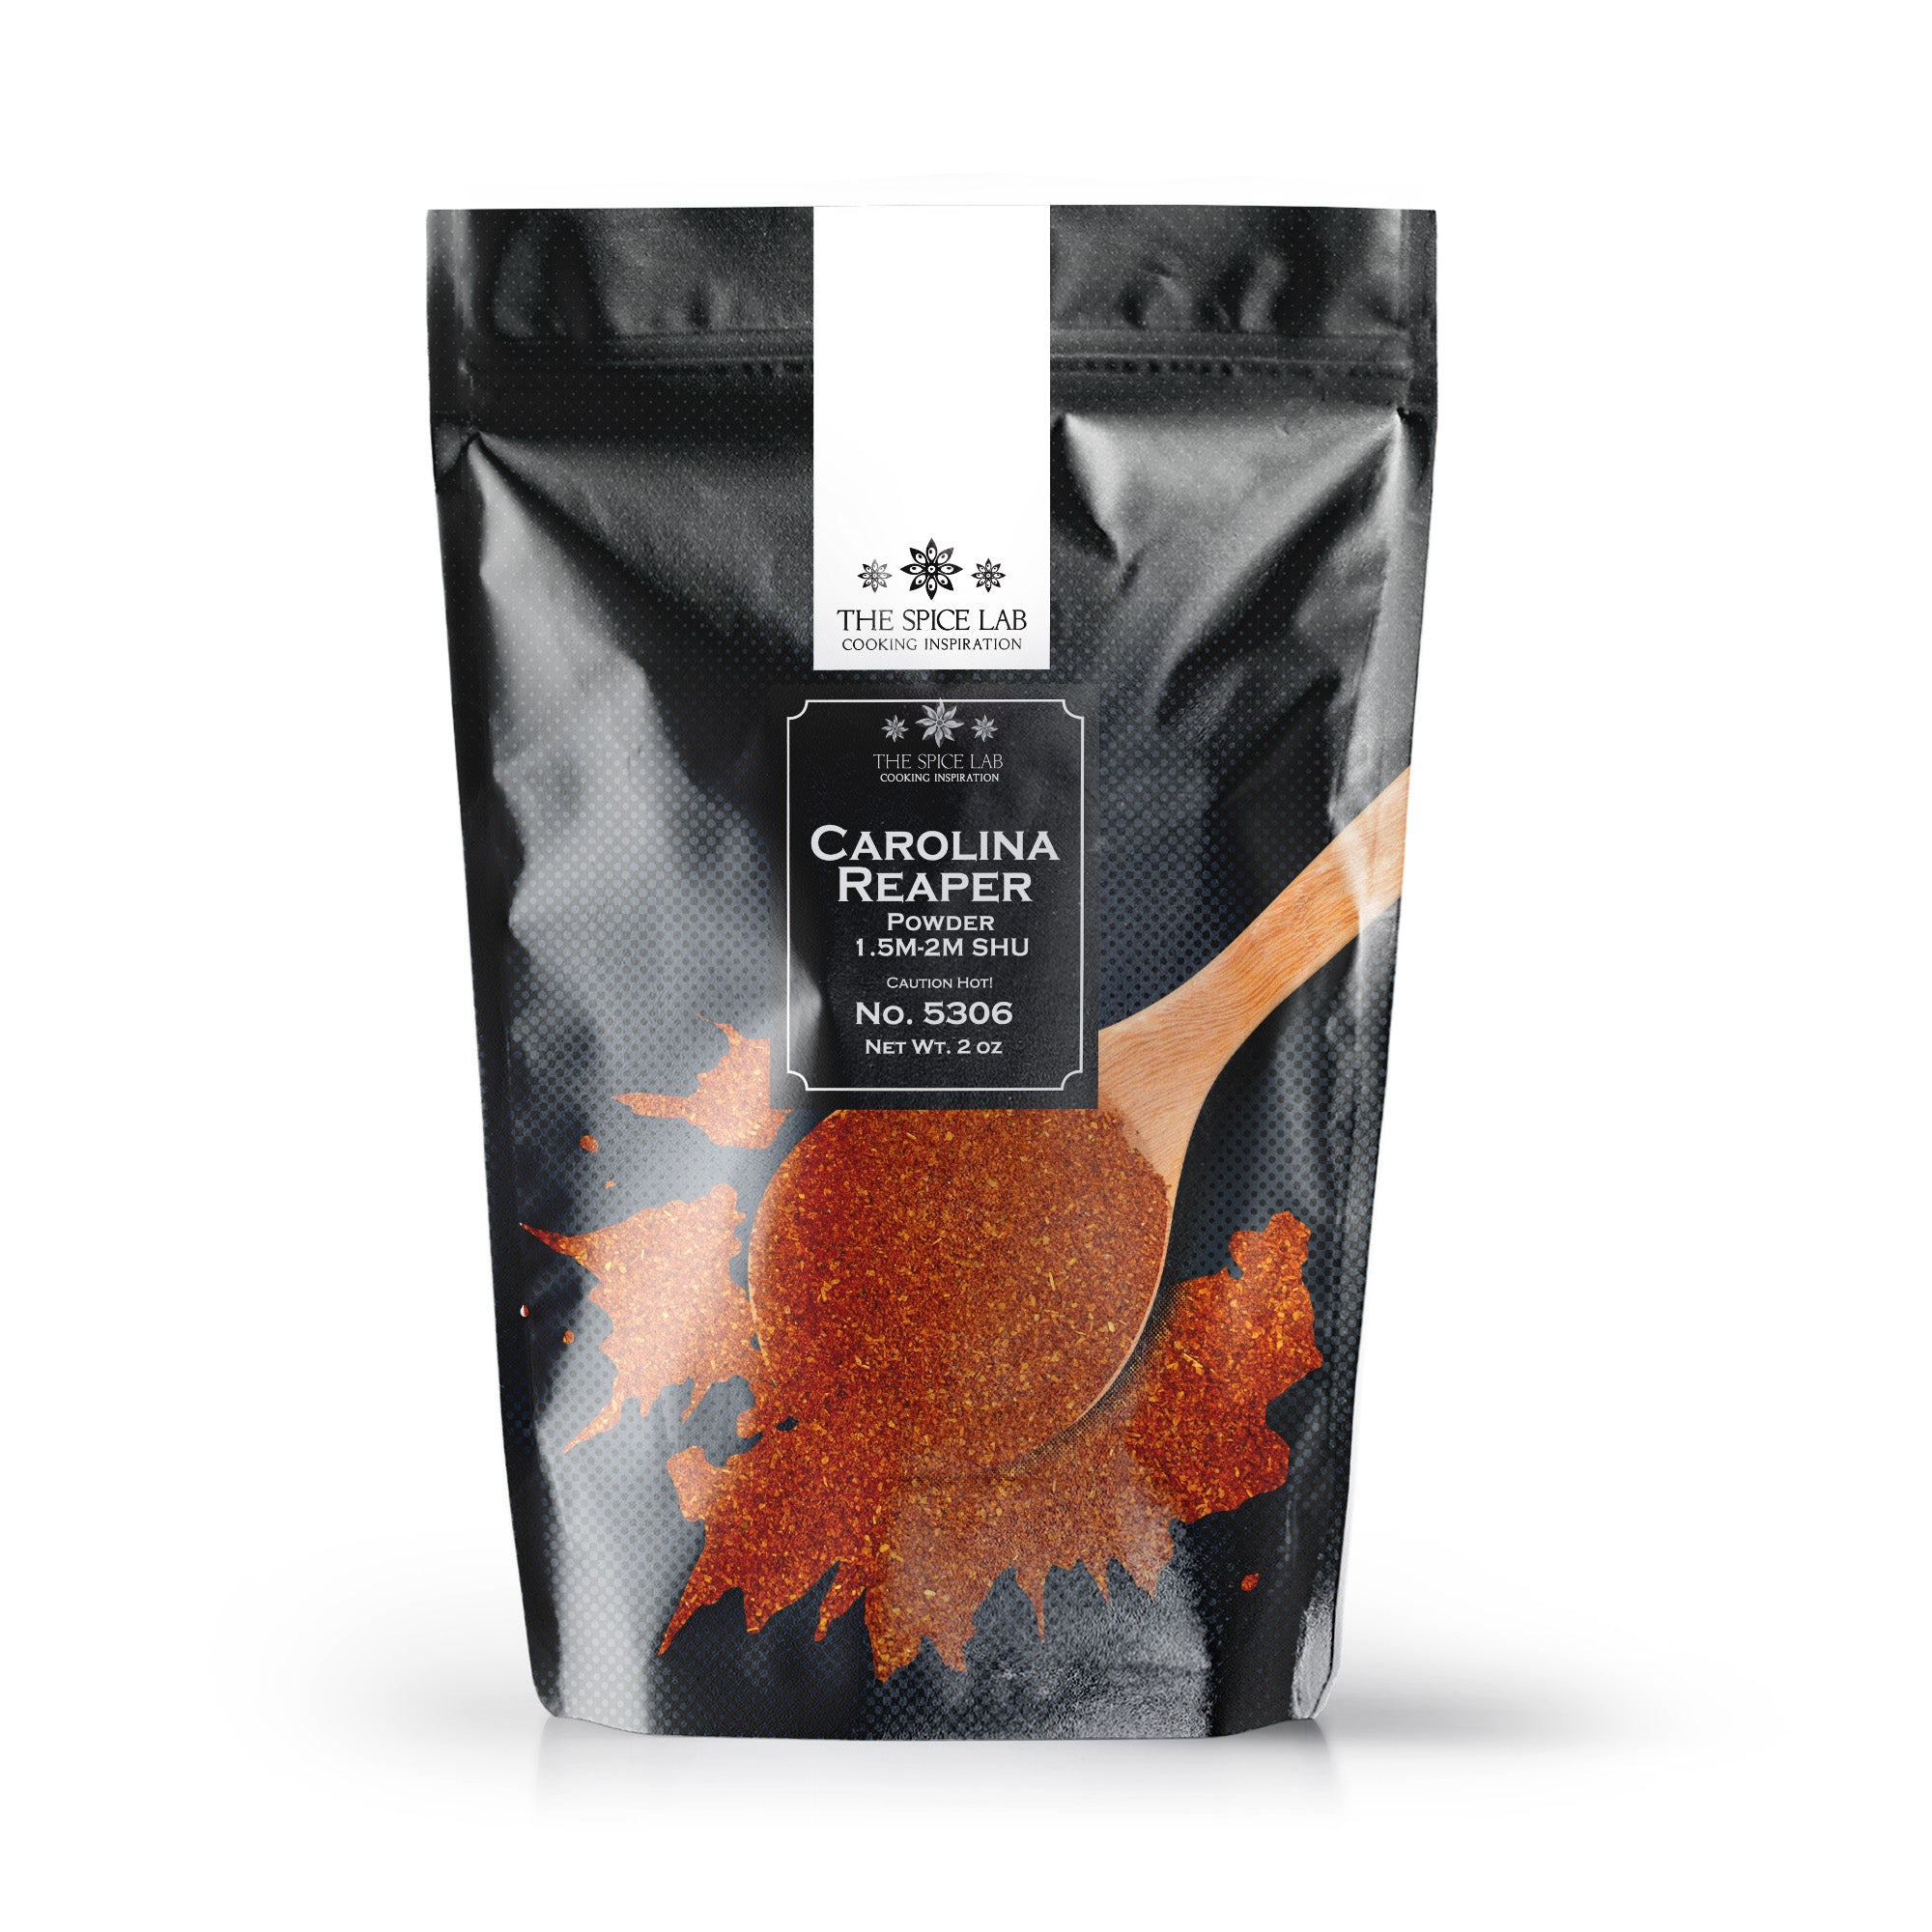 The Spice Lab Carolina Reaper Powder - Kosher Gluten-Free Non-GMO All